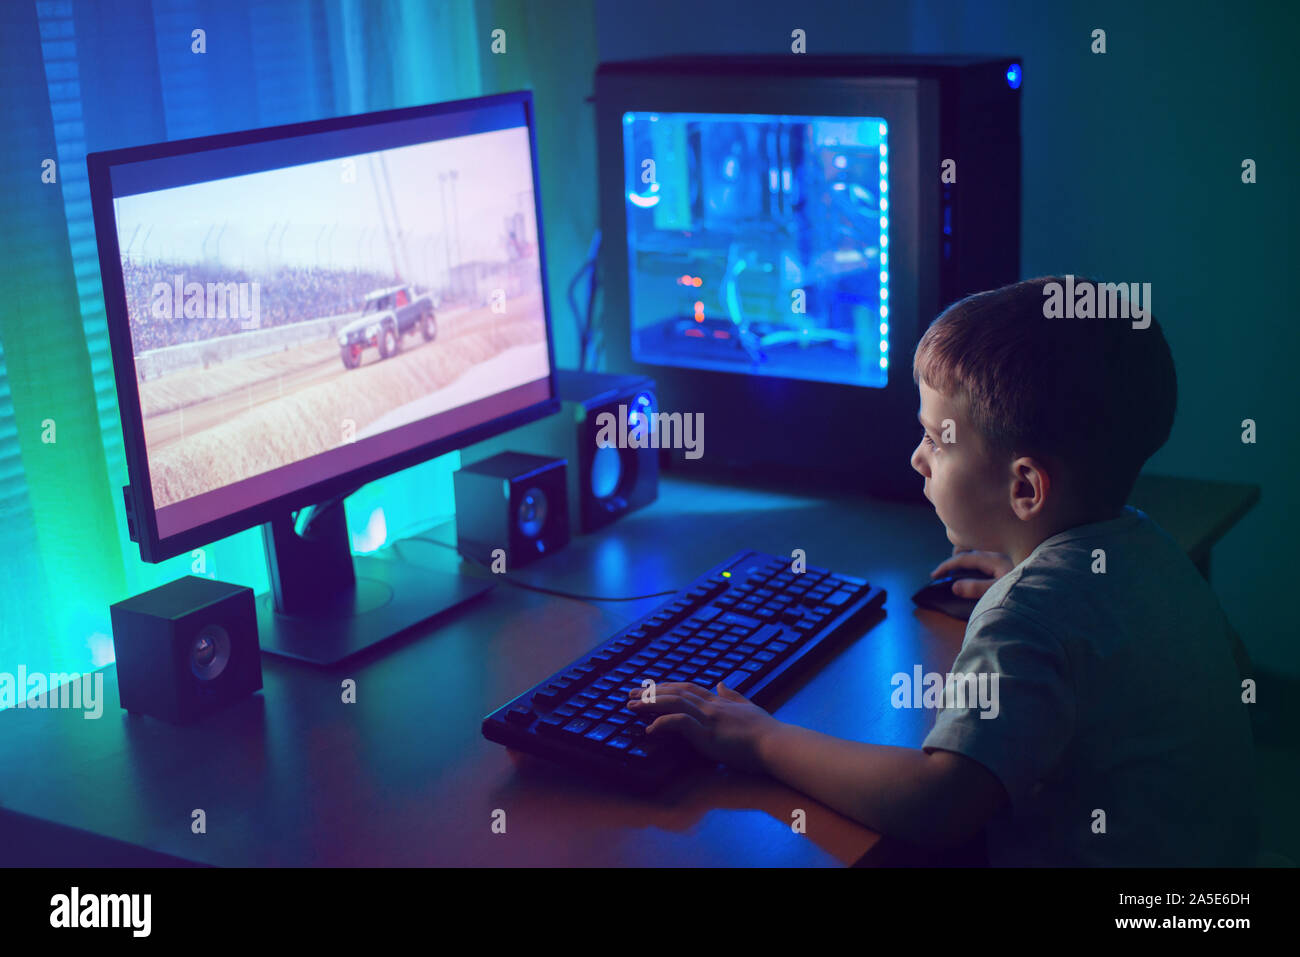 Junge Gamer spielen Sie online mit Freunden. Dunkle Szene mit Gaming-PC und viele RGB-Licht. Stockfoto